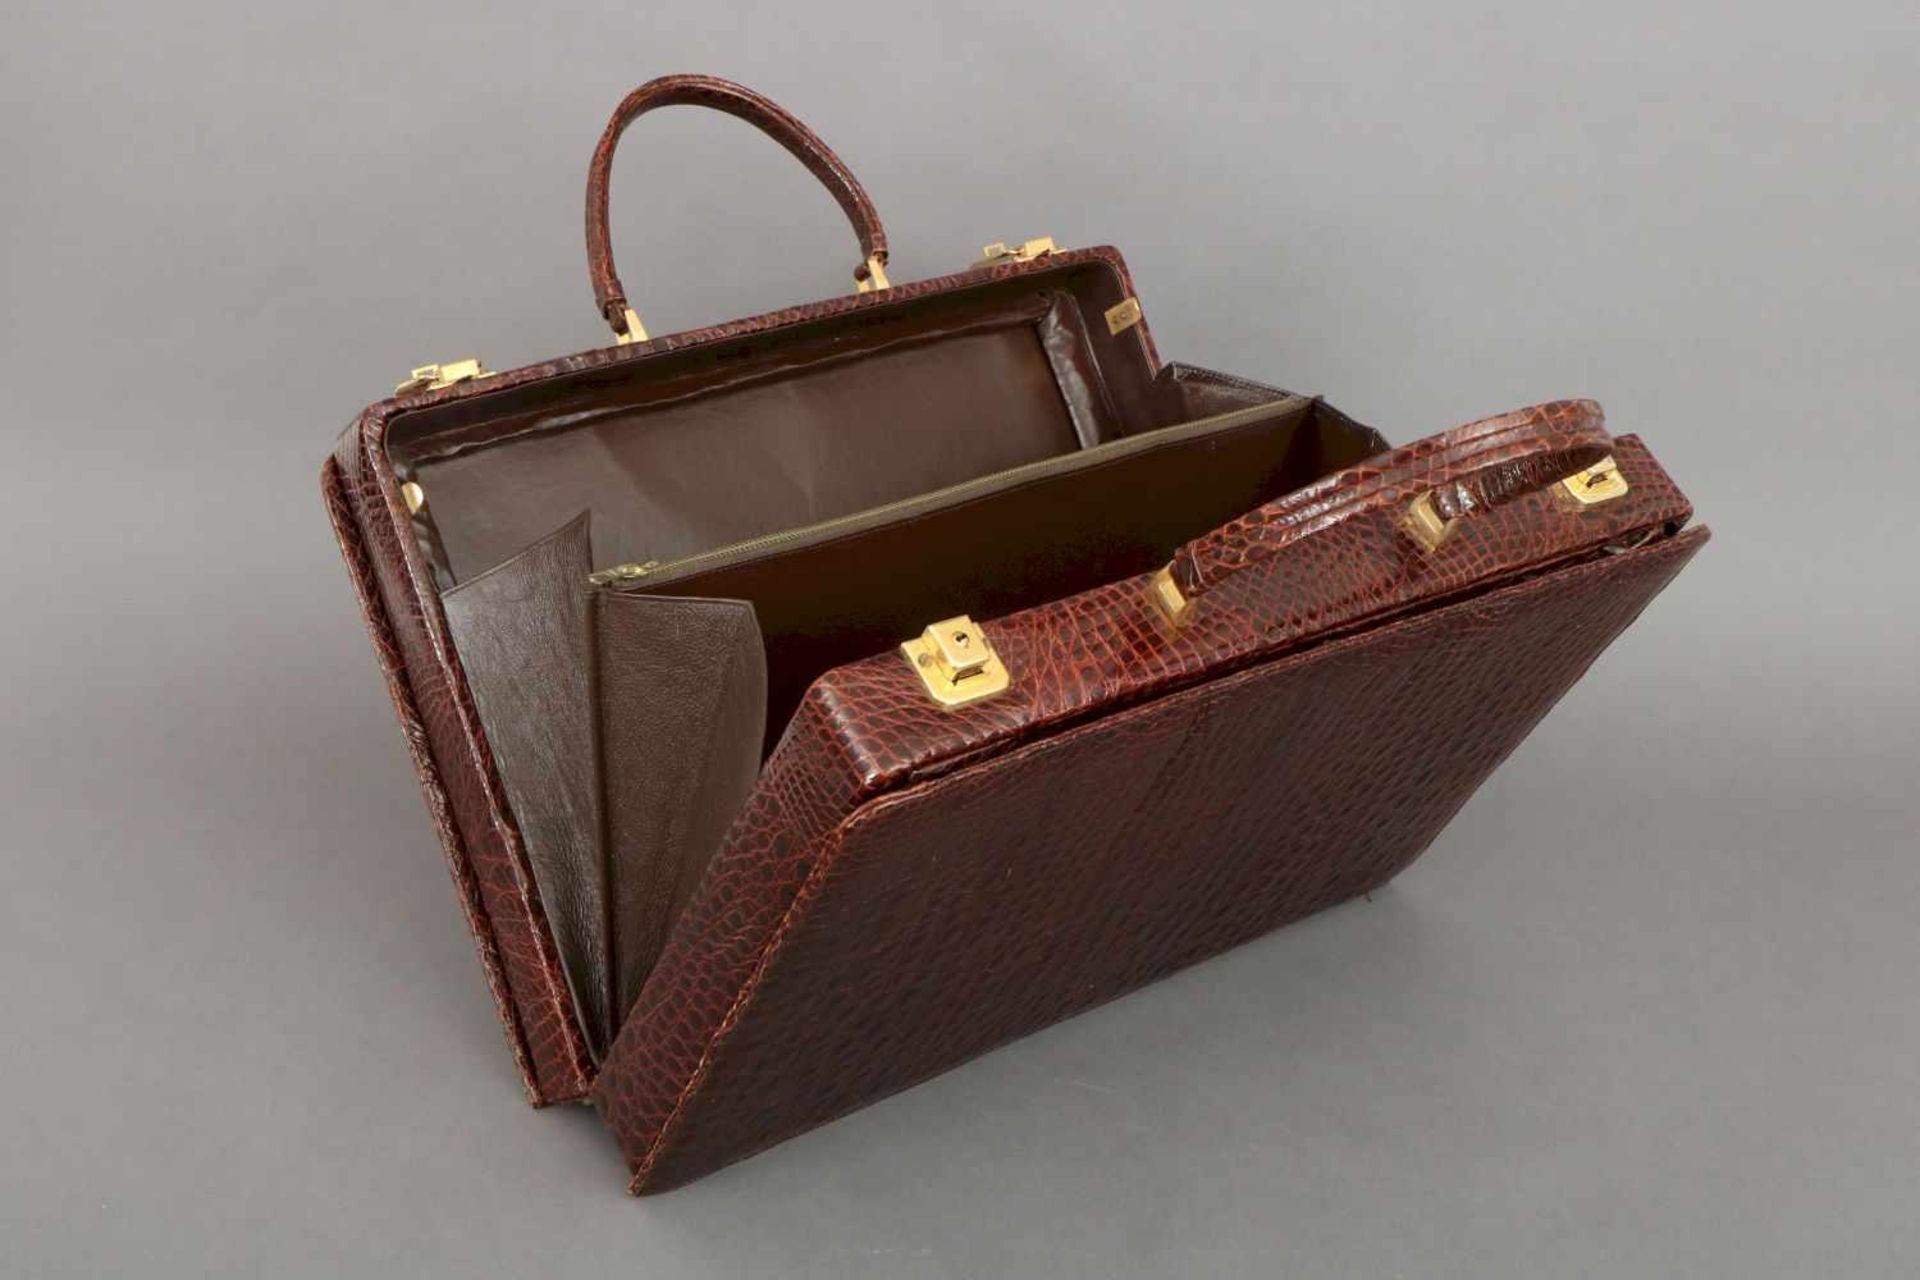 Damenaktenkofferrechteckiger Koffer mit 2 kurzen Tragegriffen, dunkelbraun gefärbtes Leder mit - Bild 3 aus 4